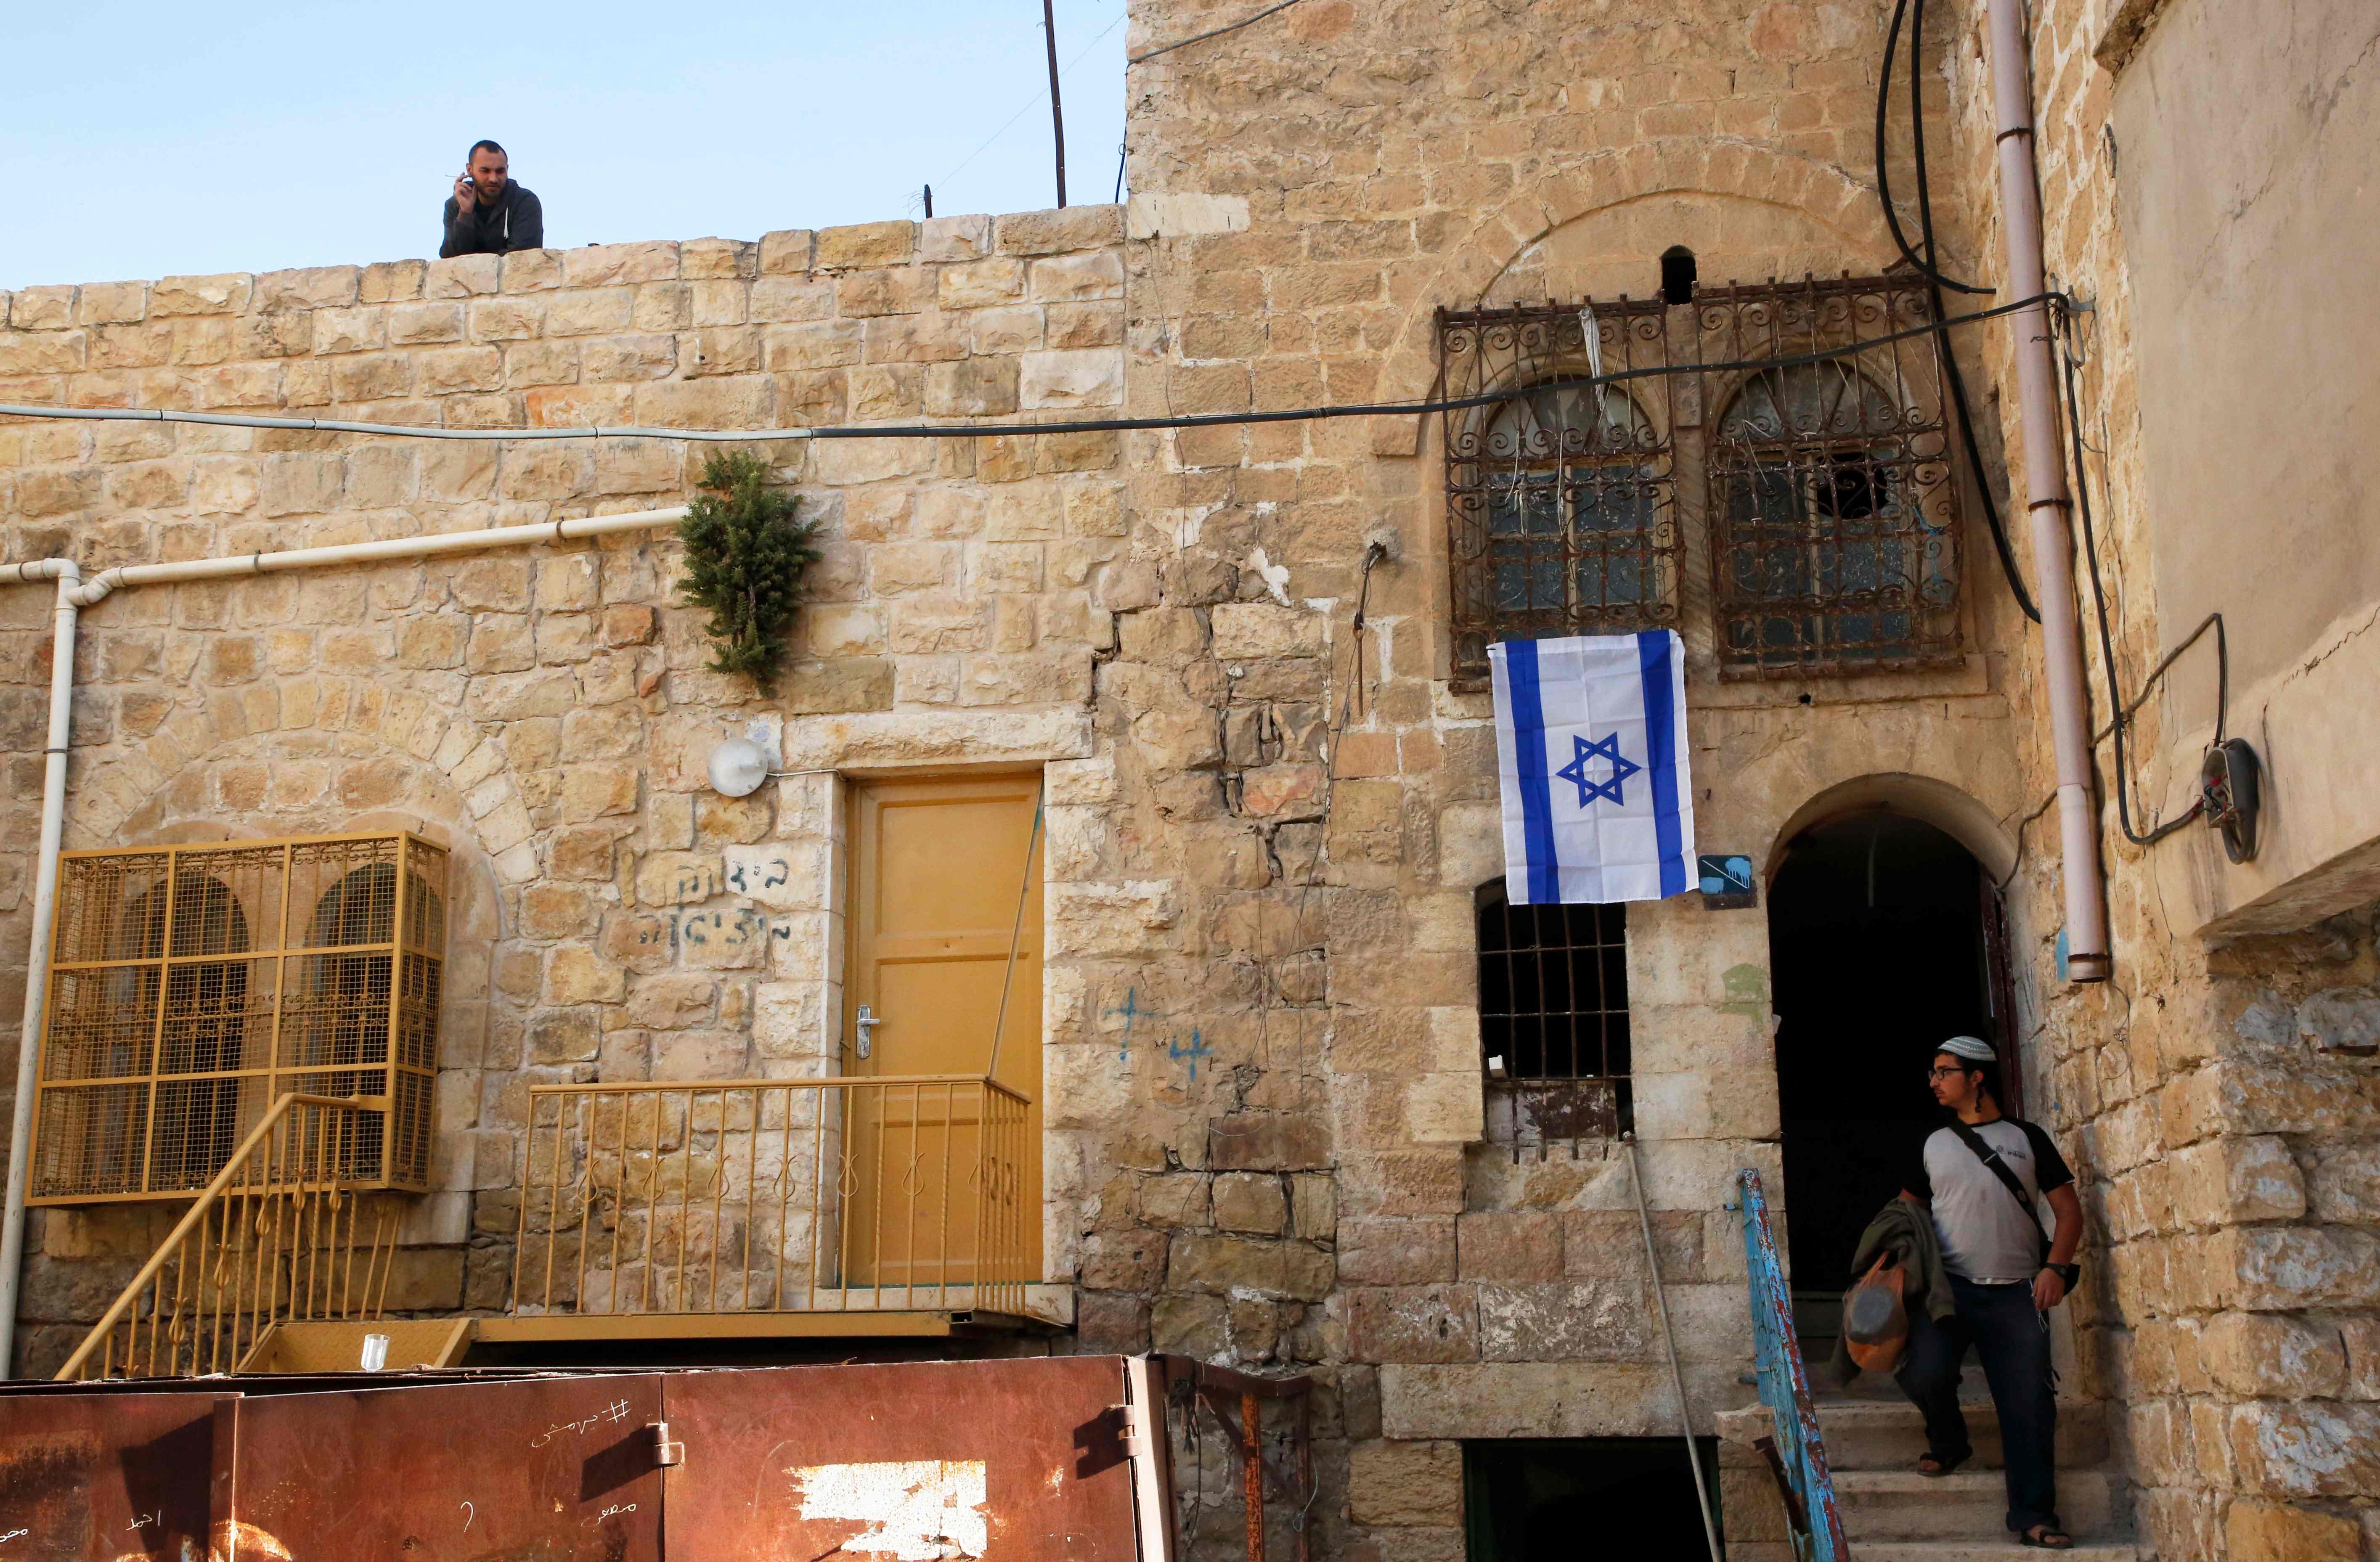 صور عائلة إسرائيلية تحتل منزل فلسطينى بالضفة الغربية (5)